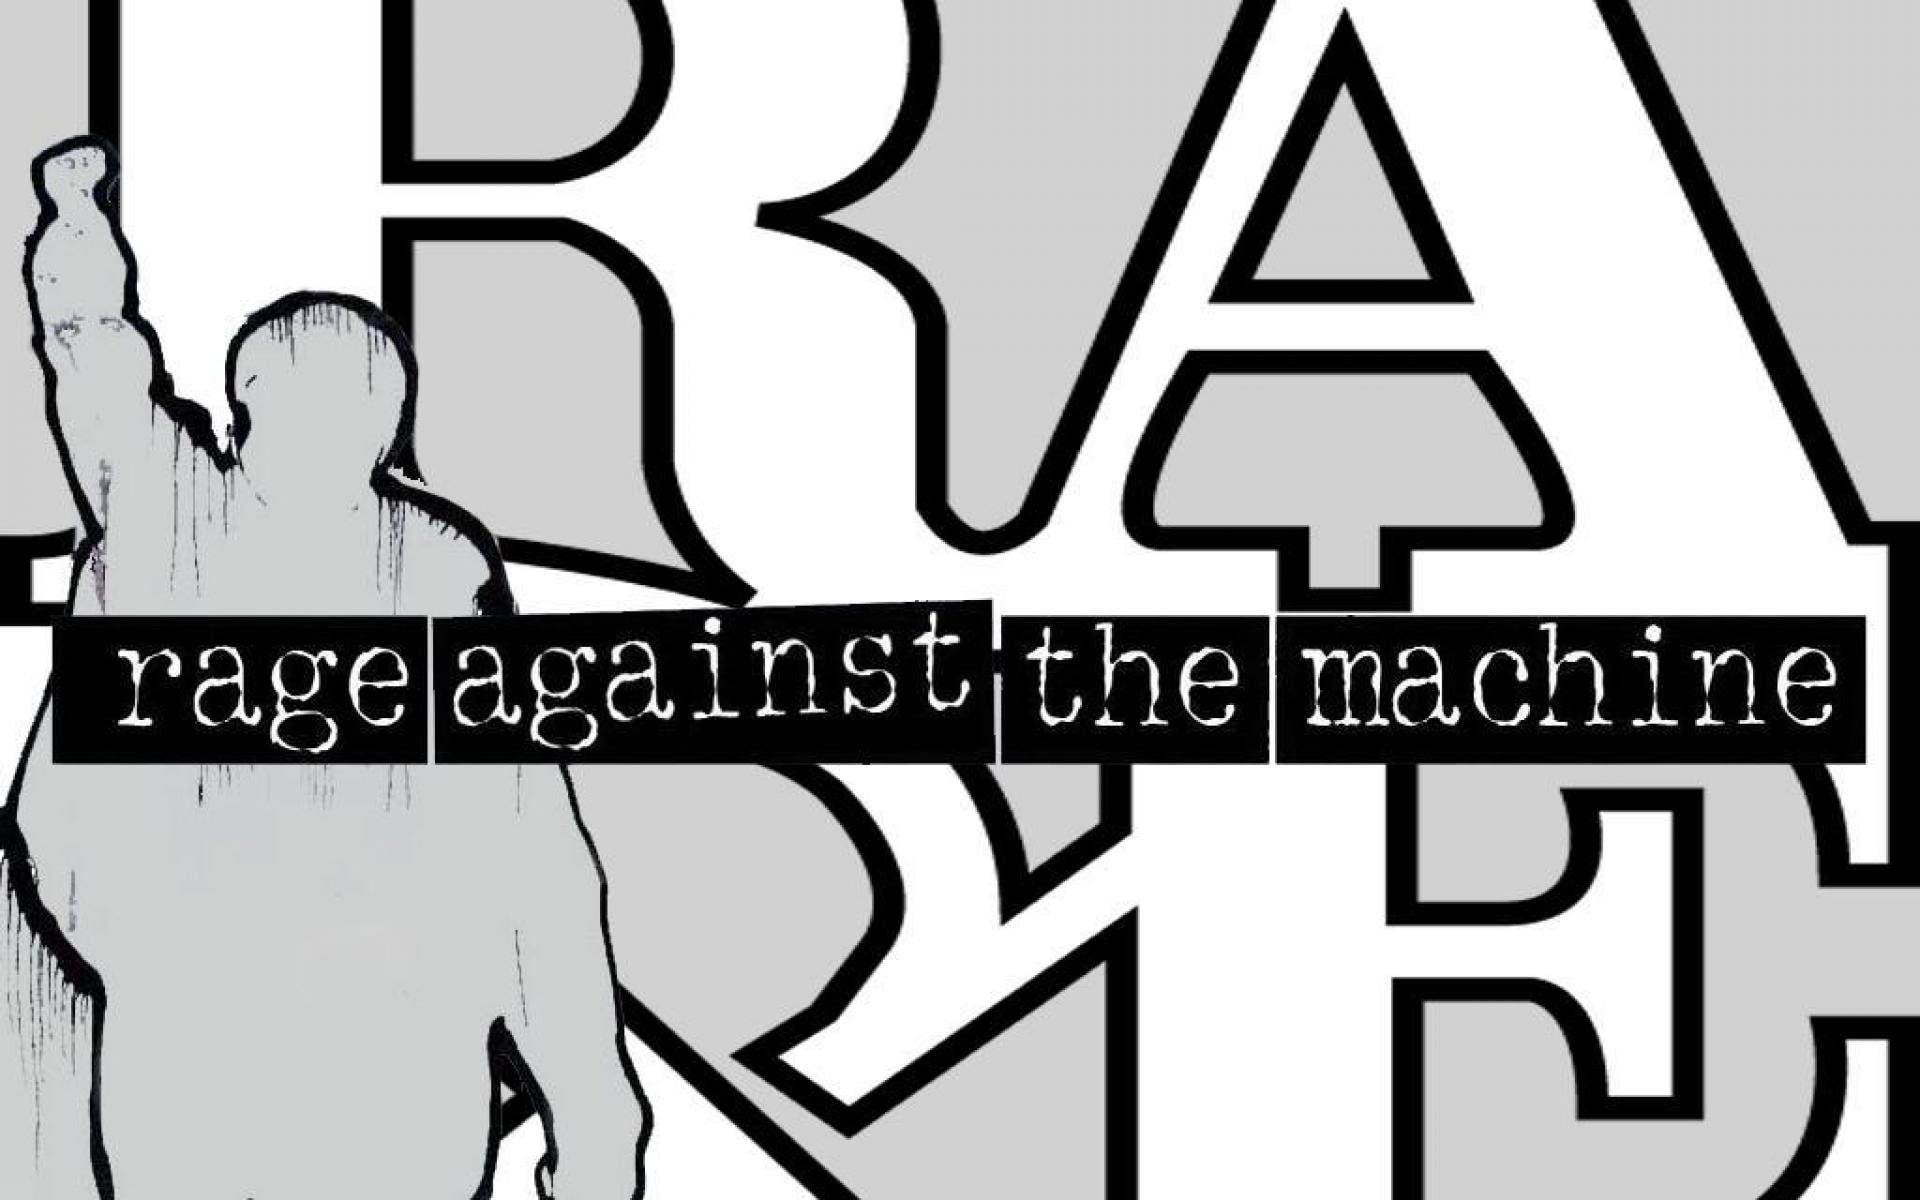 anarchy, metal, nu-metal, rage-against-machine, rap, ratm